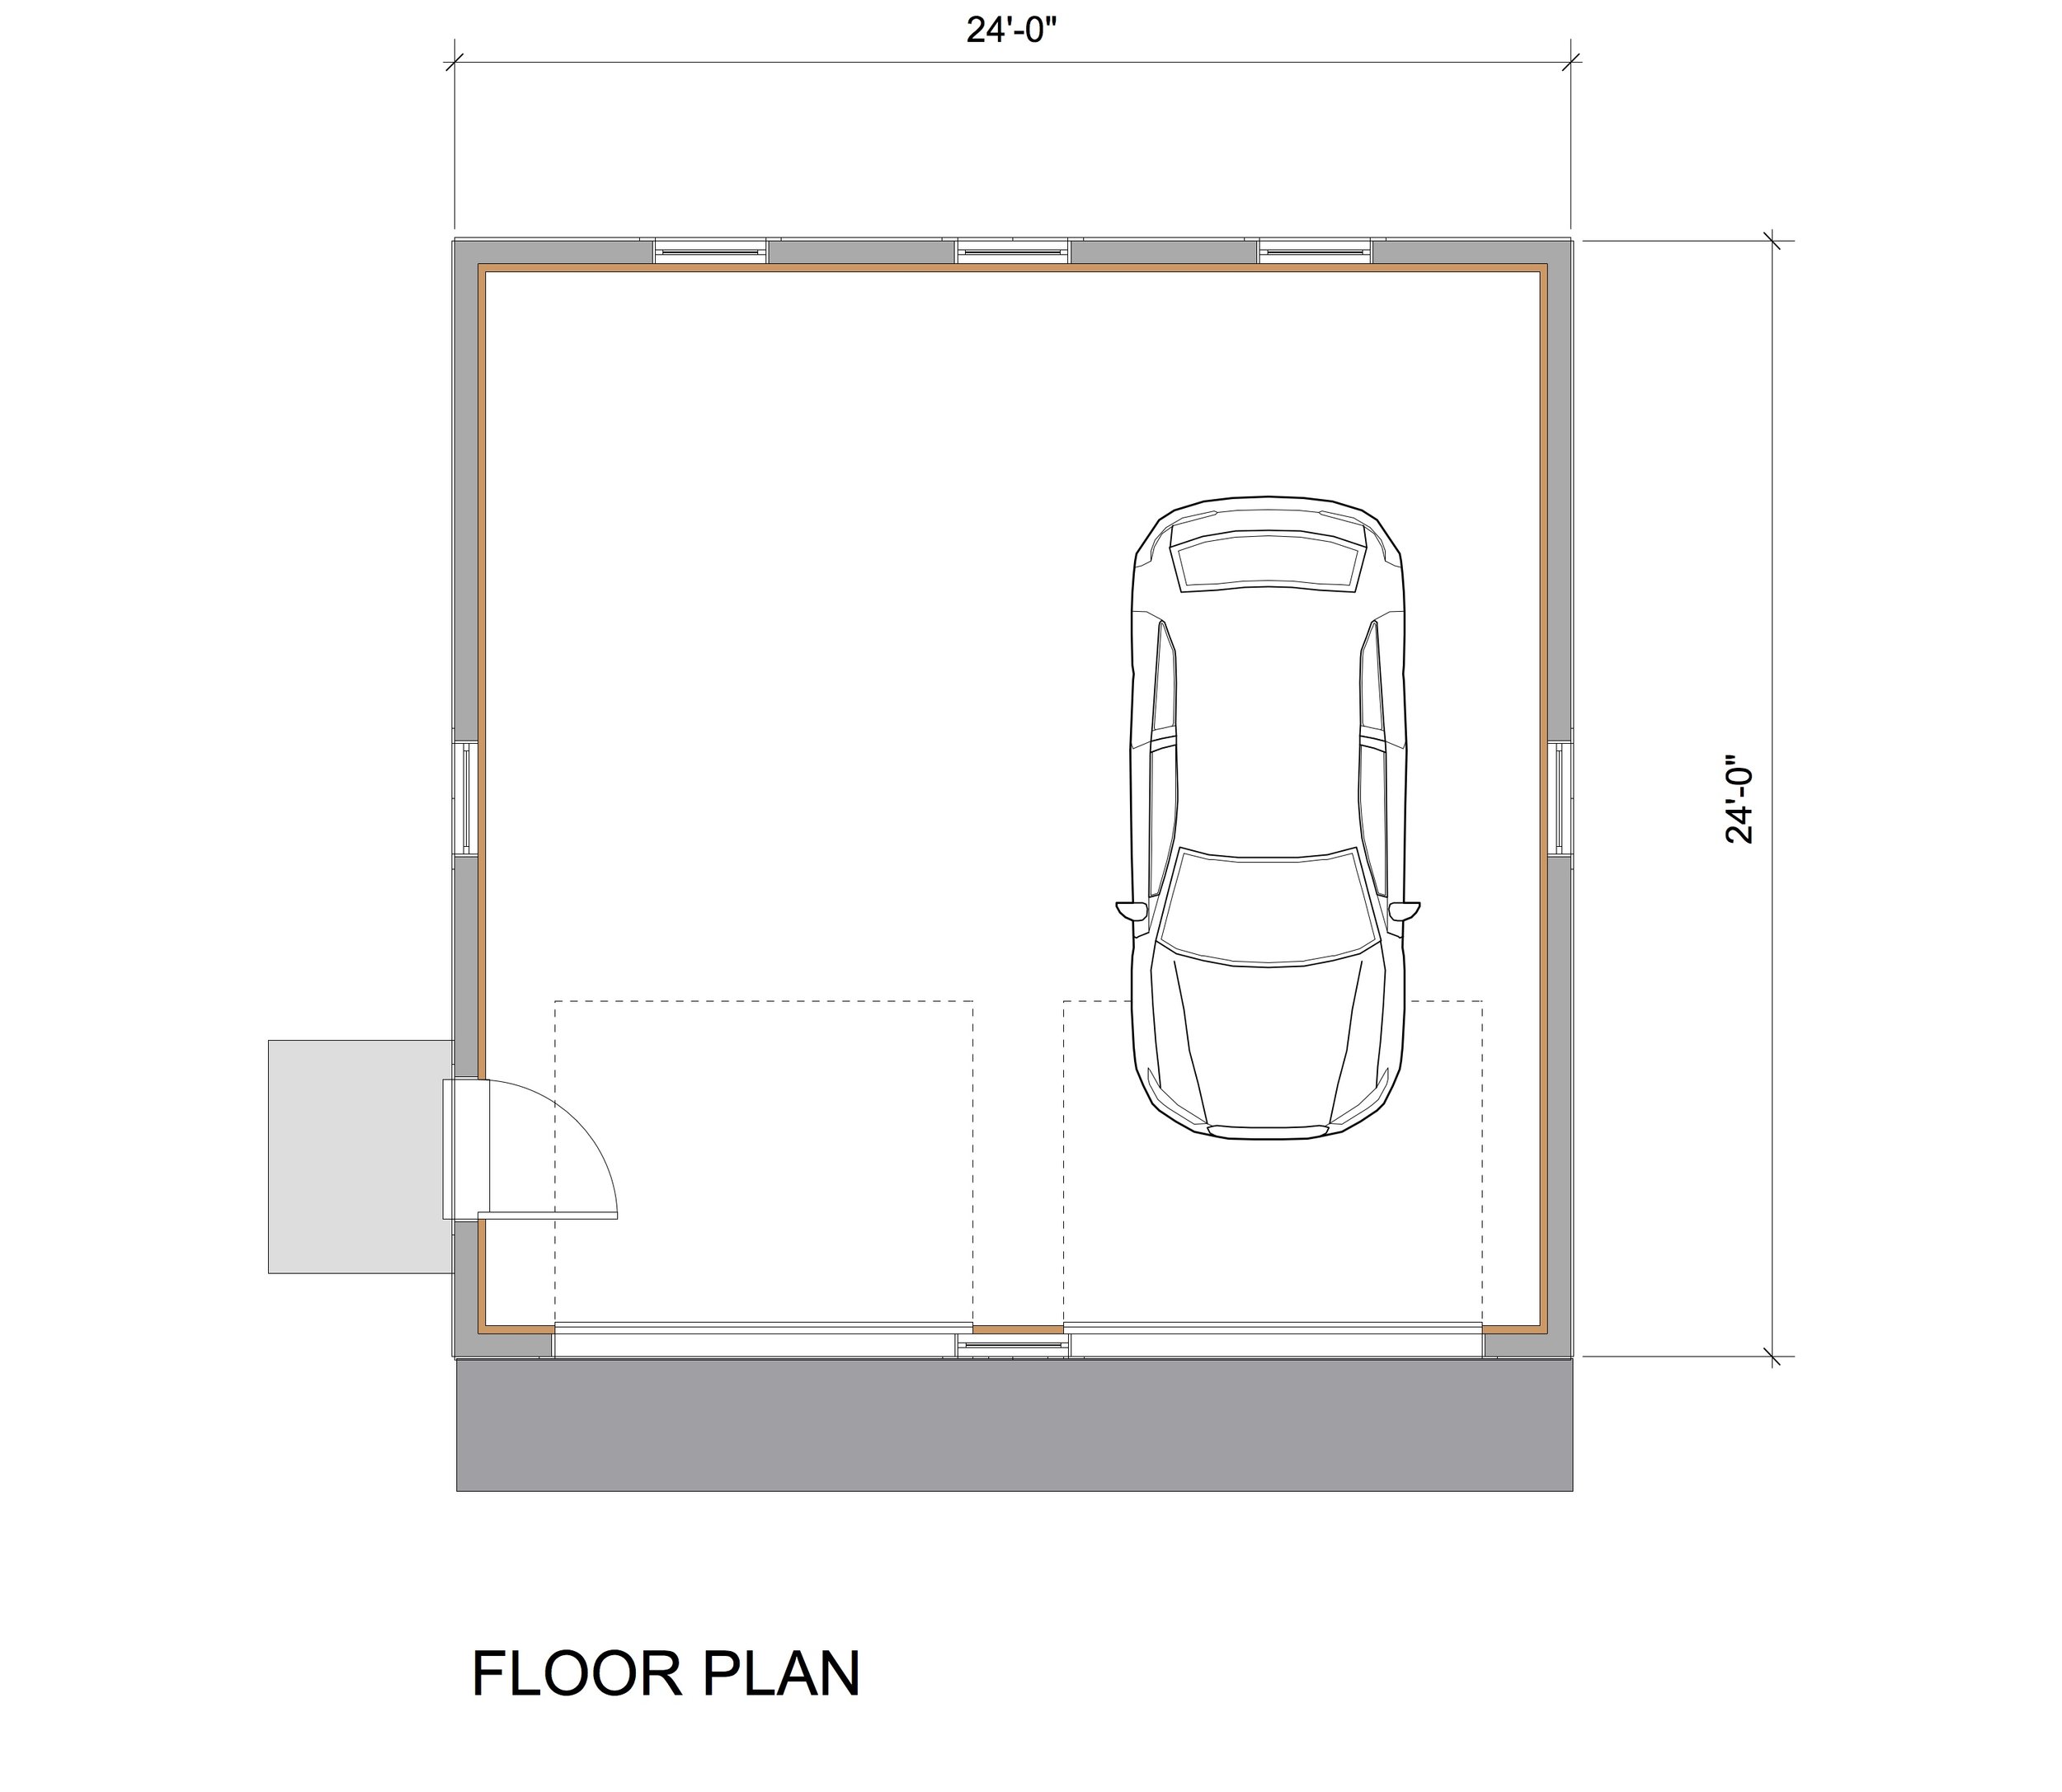 Garage Series g1 plan.jpg